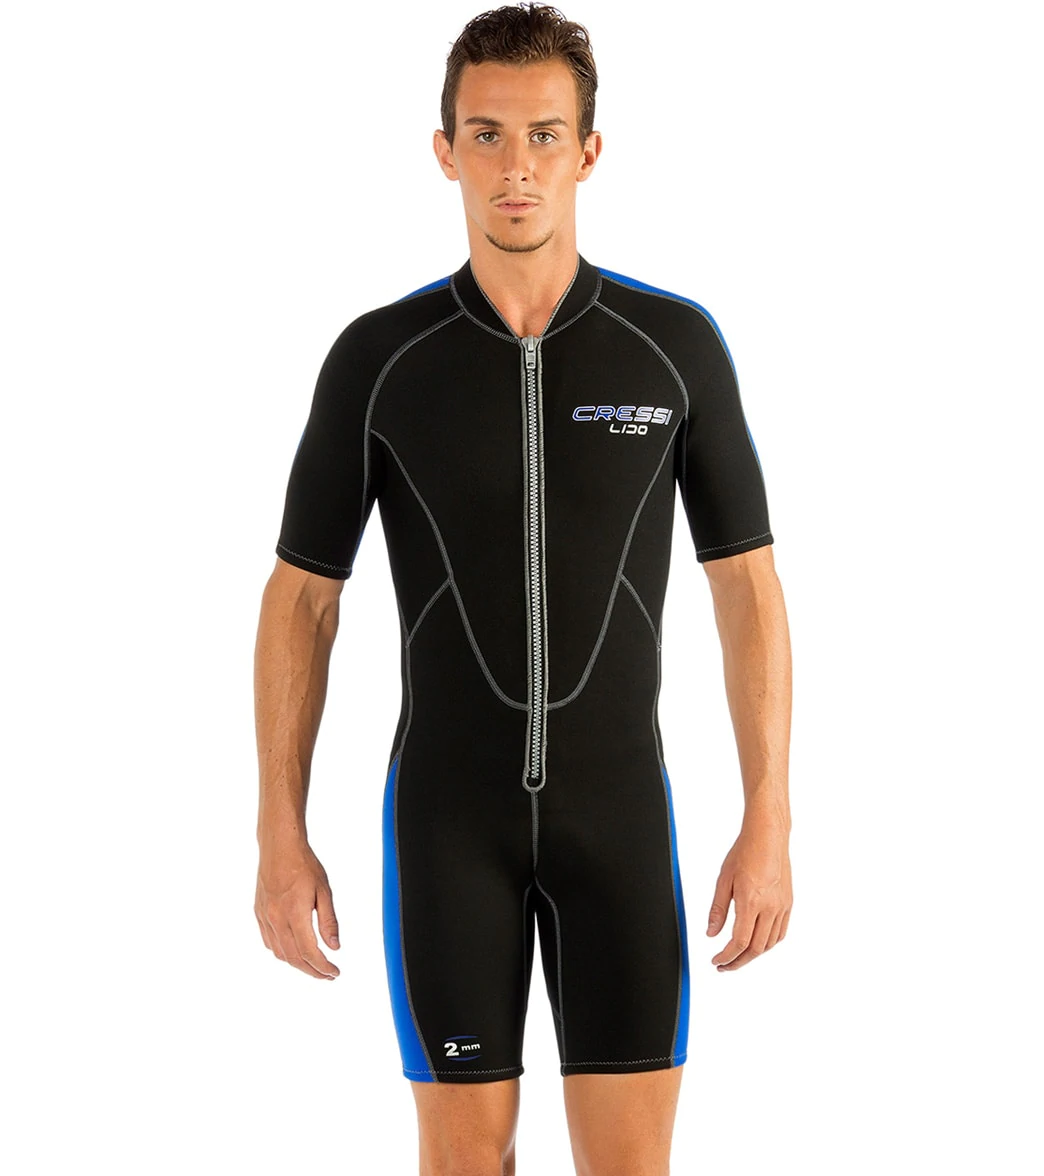 Cressi Lido Shorty Wetsuit 2mm For Sale Online - Dan's Dive Shop